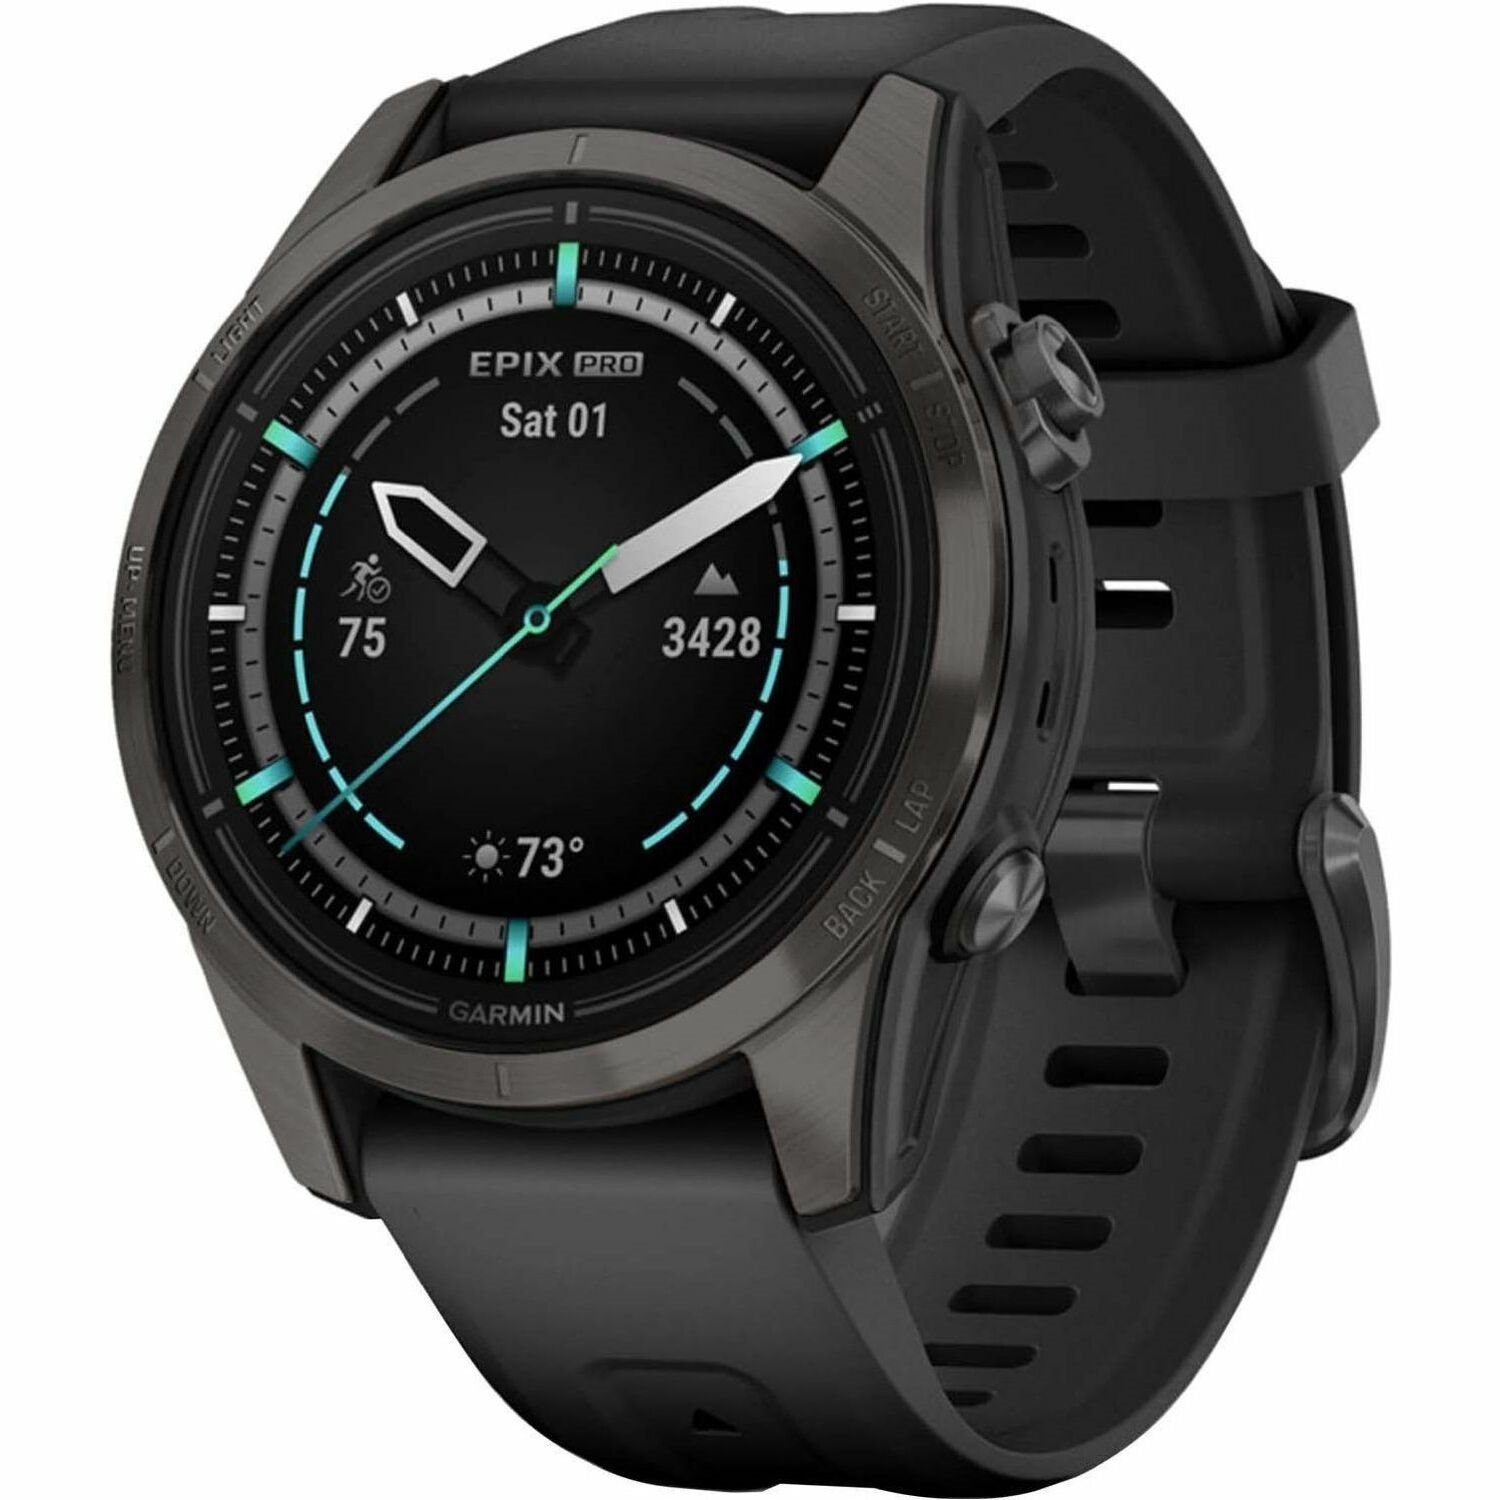 Garmin epix Pro (Gen 2) Smart Watch